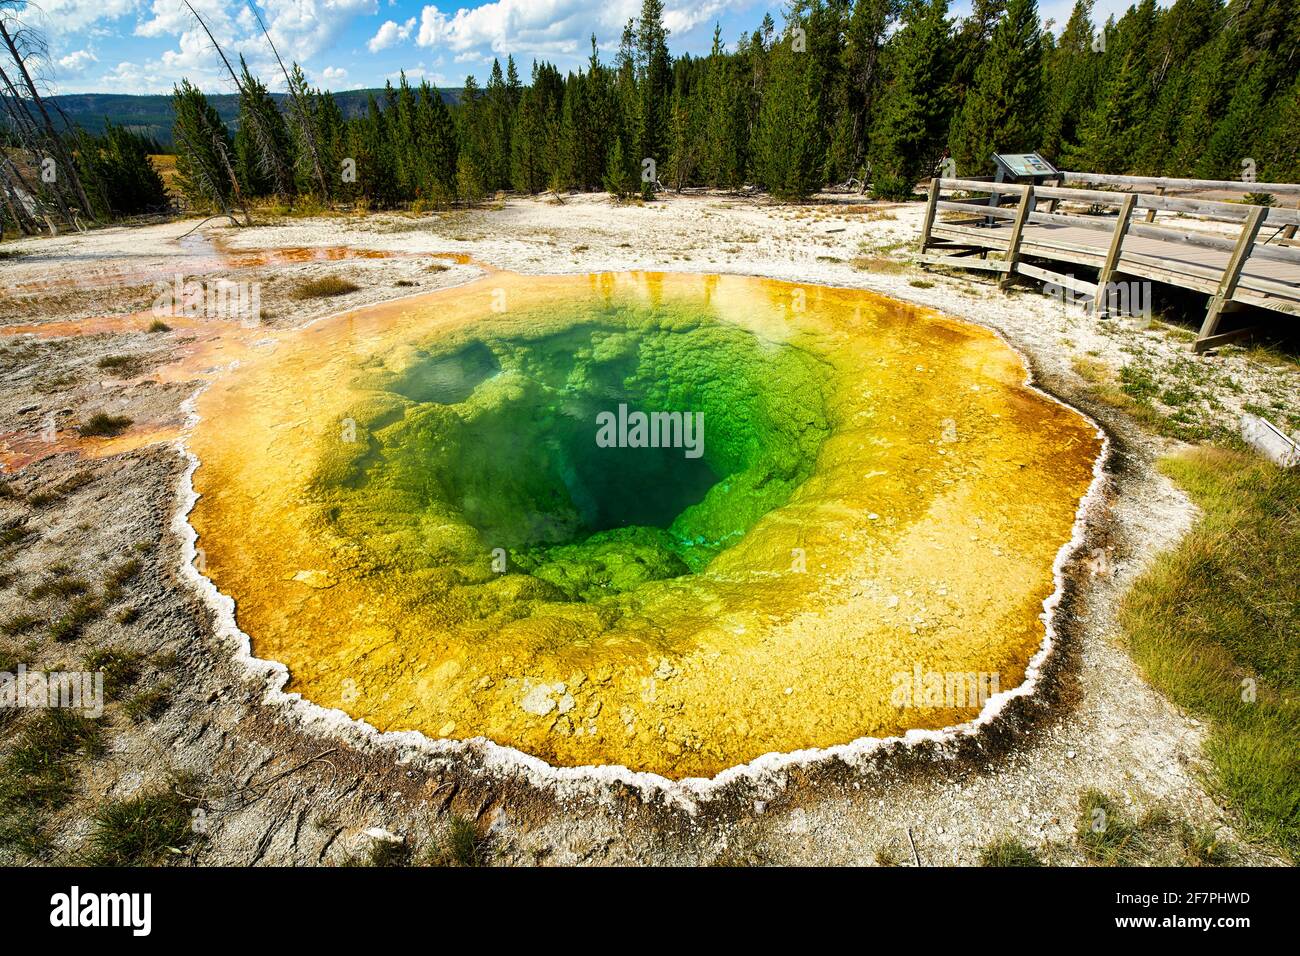 Piscine Morning Glory dans le parc national de Yellowstone. Wyoming. ÉTATS-UNIS. Banque D'Images